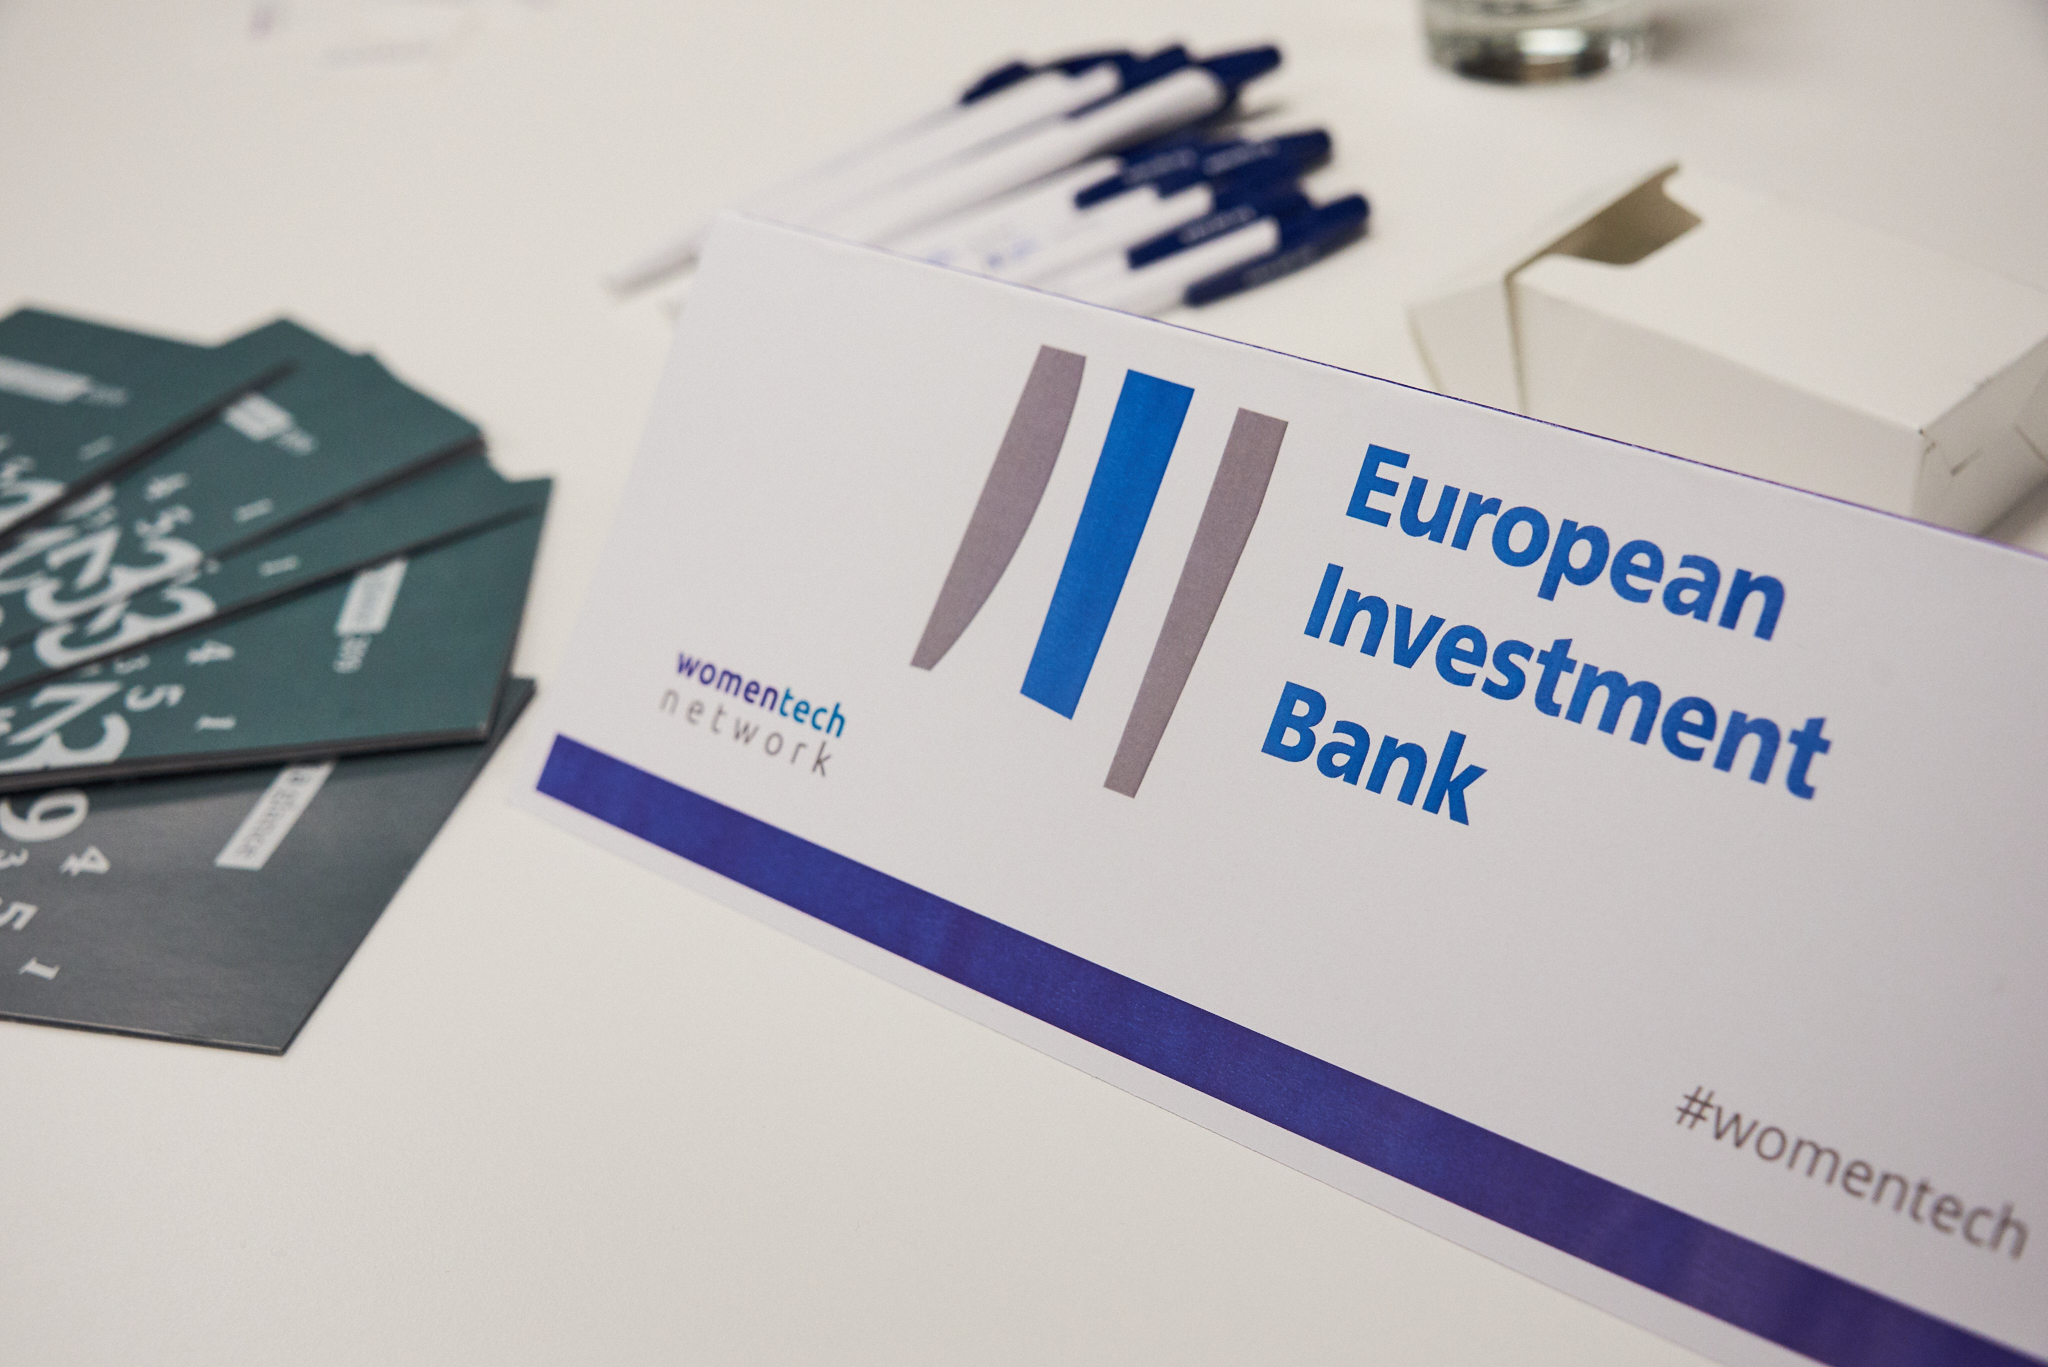 WomenTech Network - European Investment Bank